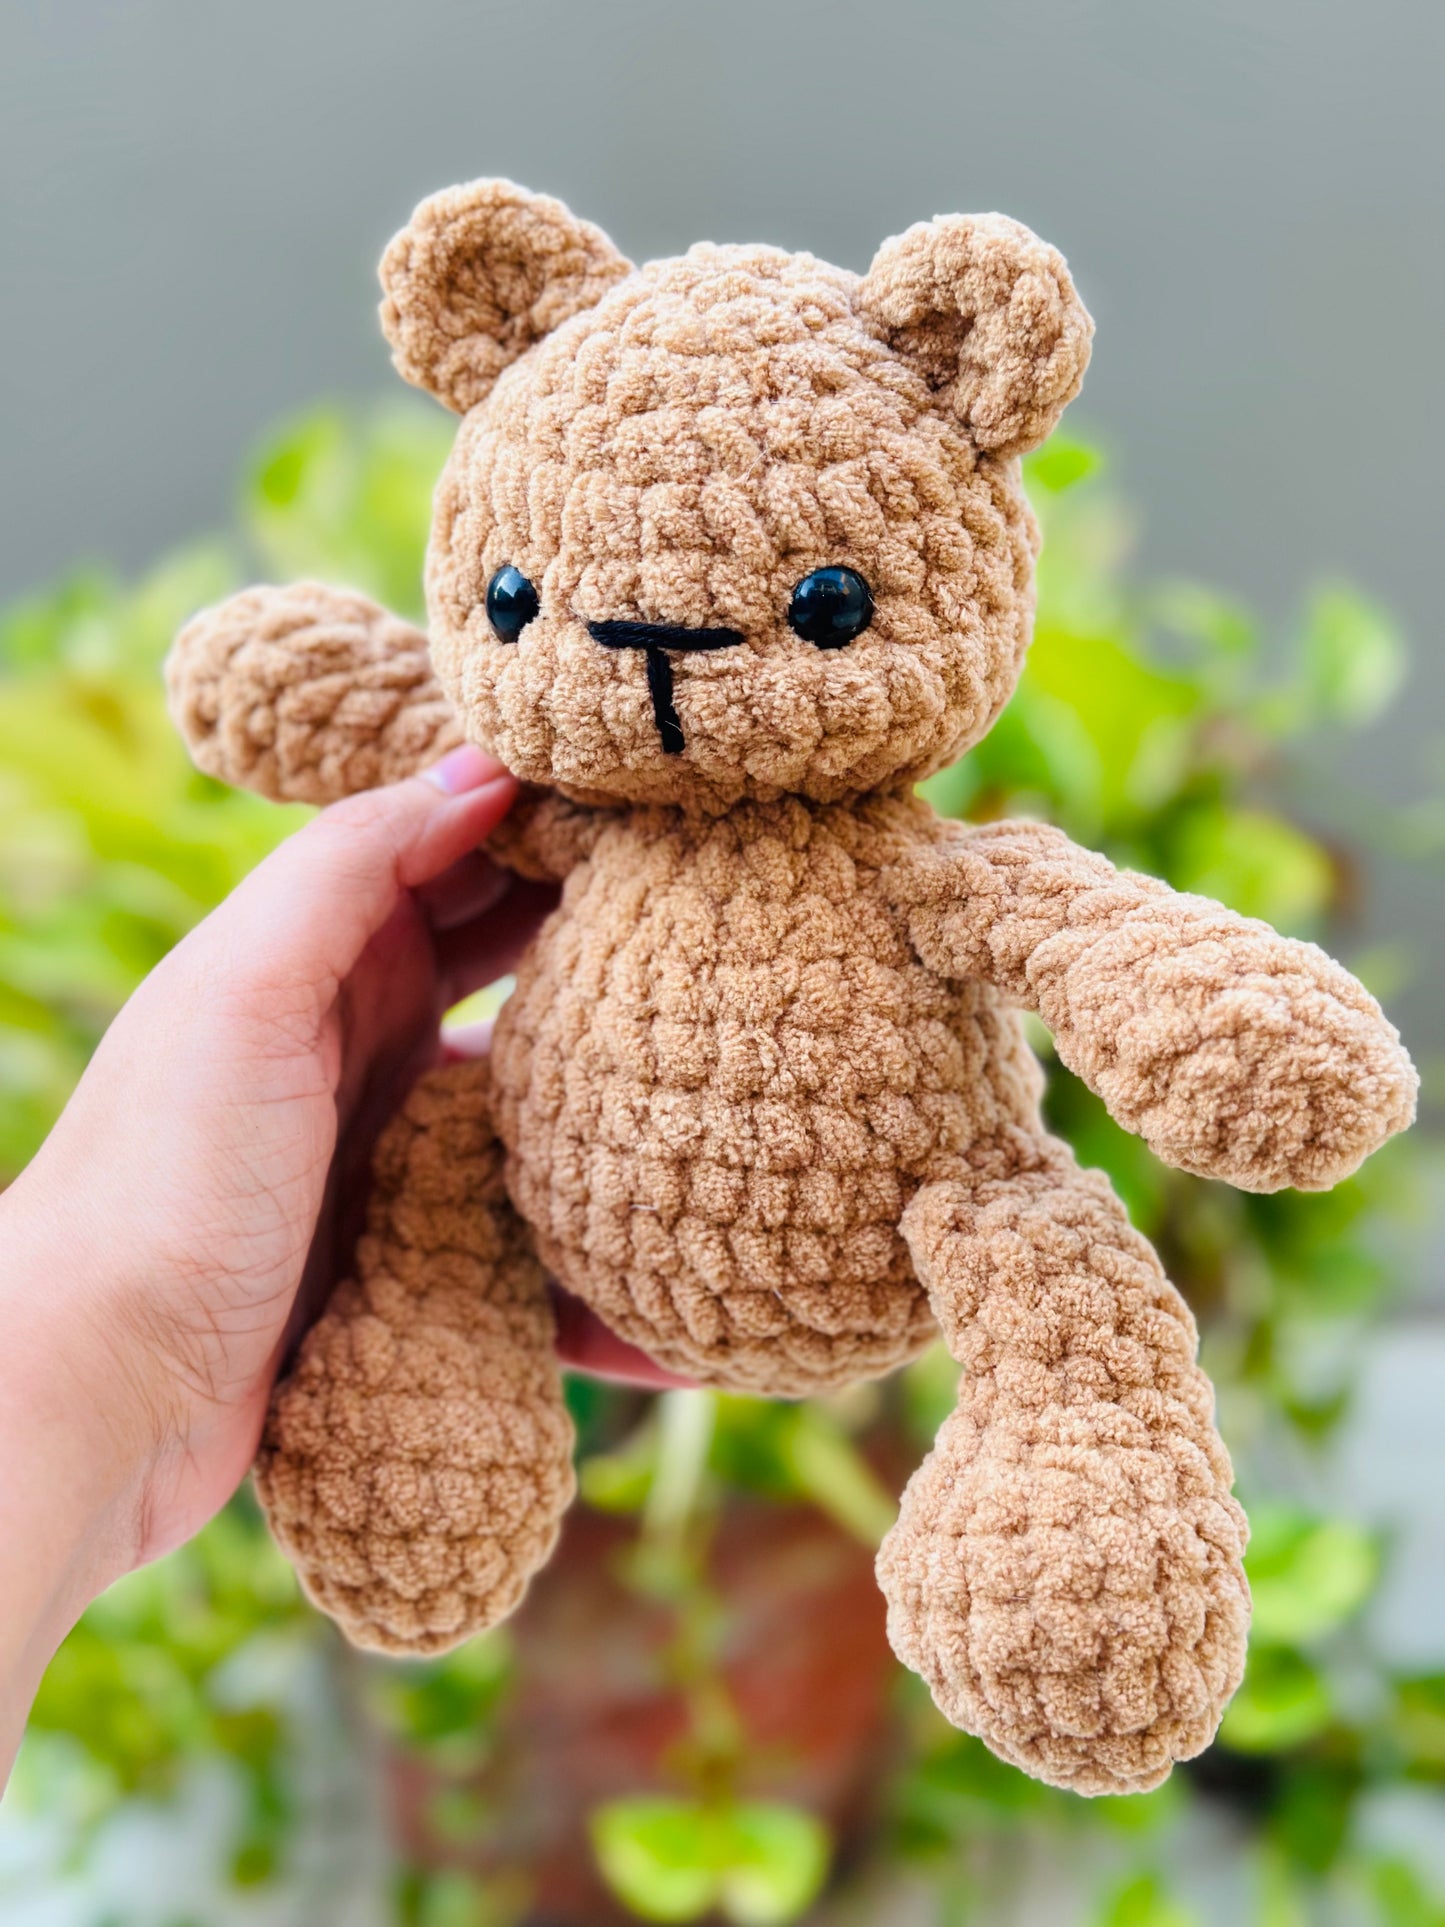 Toy - teddy bear